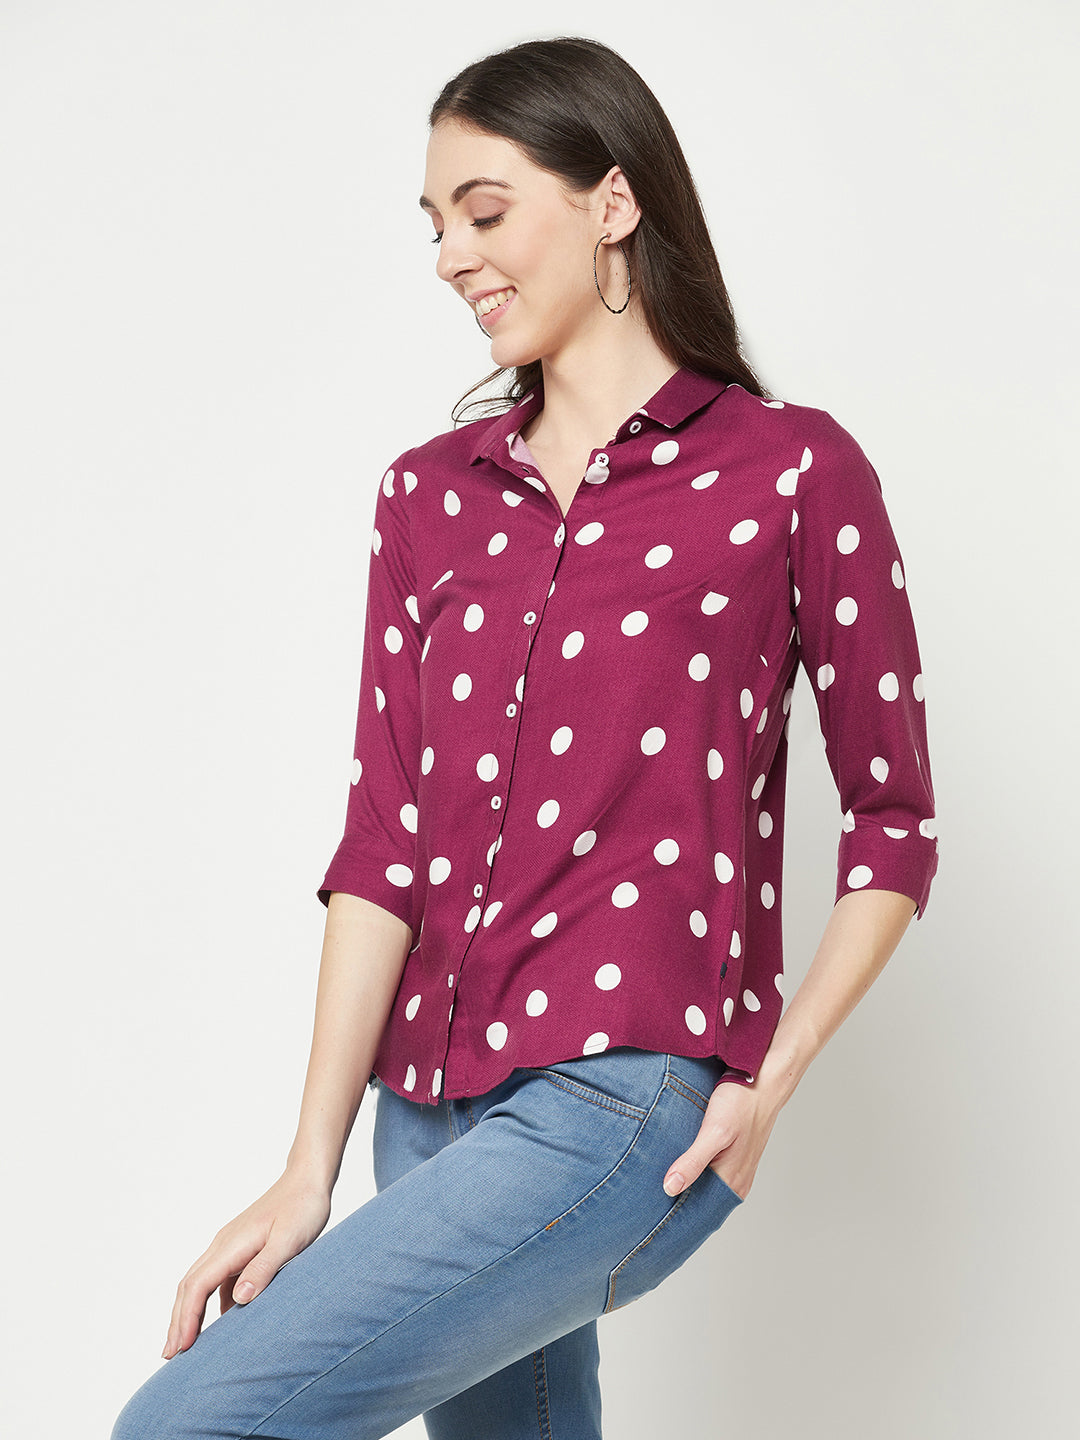  Magenta Polka Dots Shirt